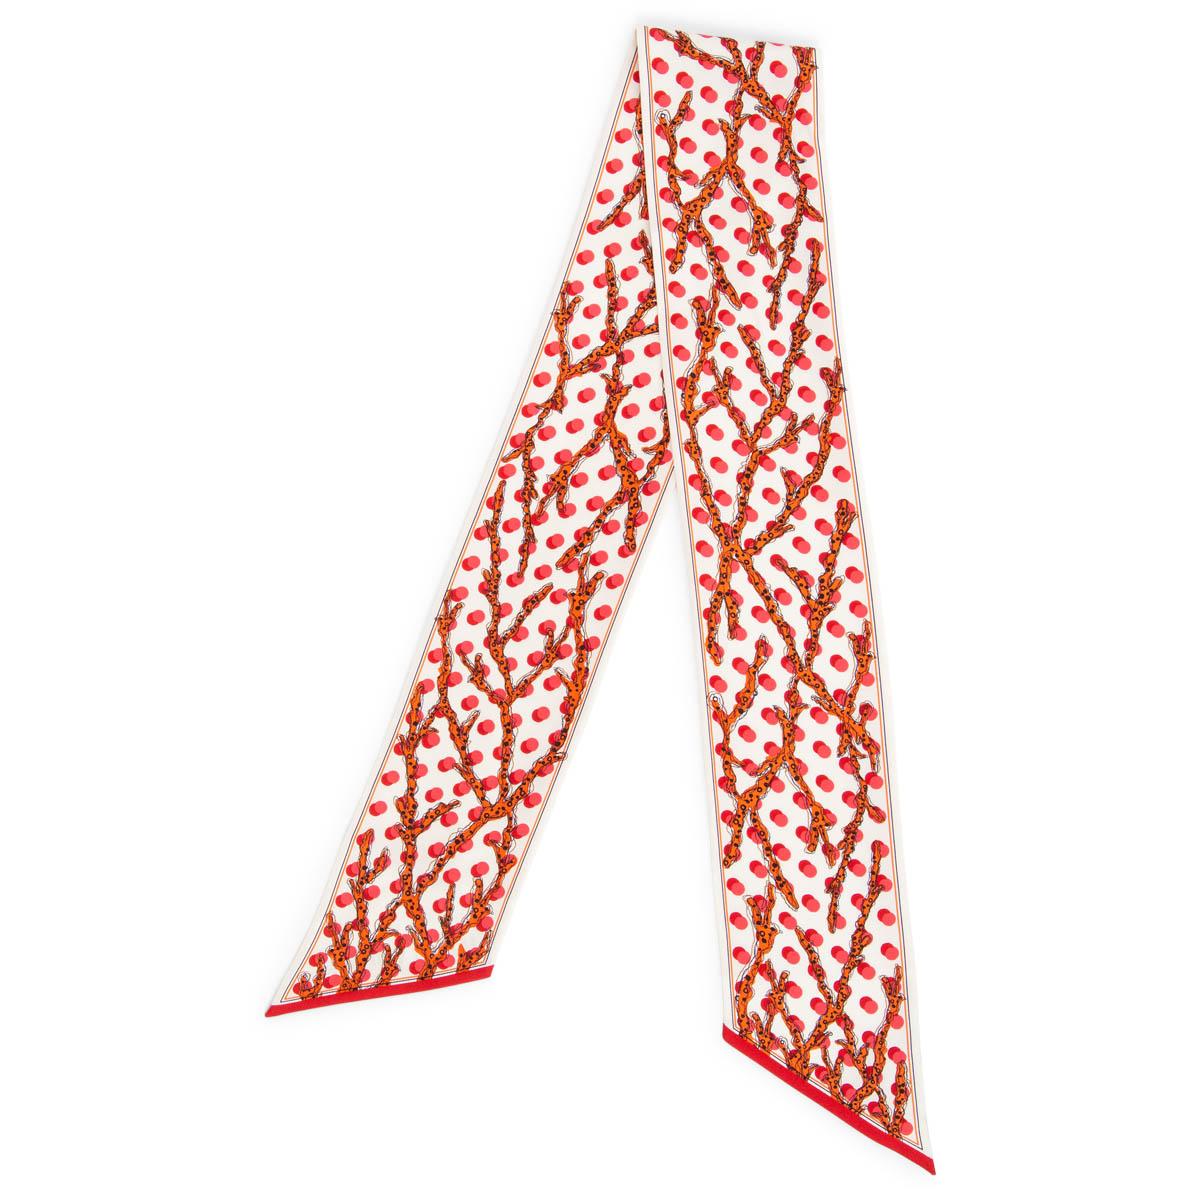 Echarpe bandeau 100% authentique Louis Vuitton Ramages Dots en soie blanc cassé, rouge, rose et orange (100%) avec impression corail. A été porté et est en excellent état. 

Mesures
Largeur	10.5cm (4.1in)
Longueur	127cm (49.5in)

Toutes nos annonces